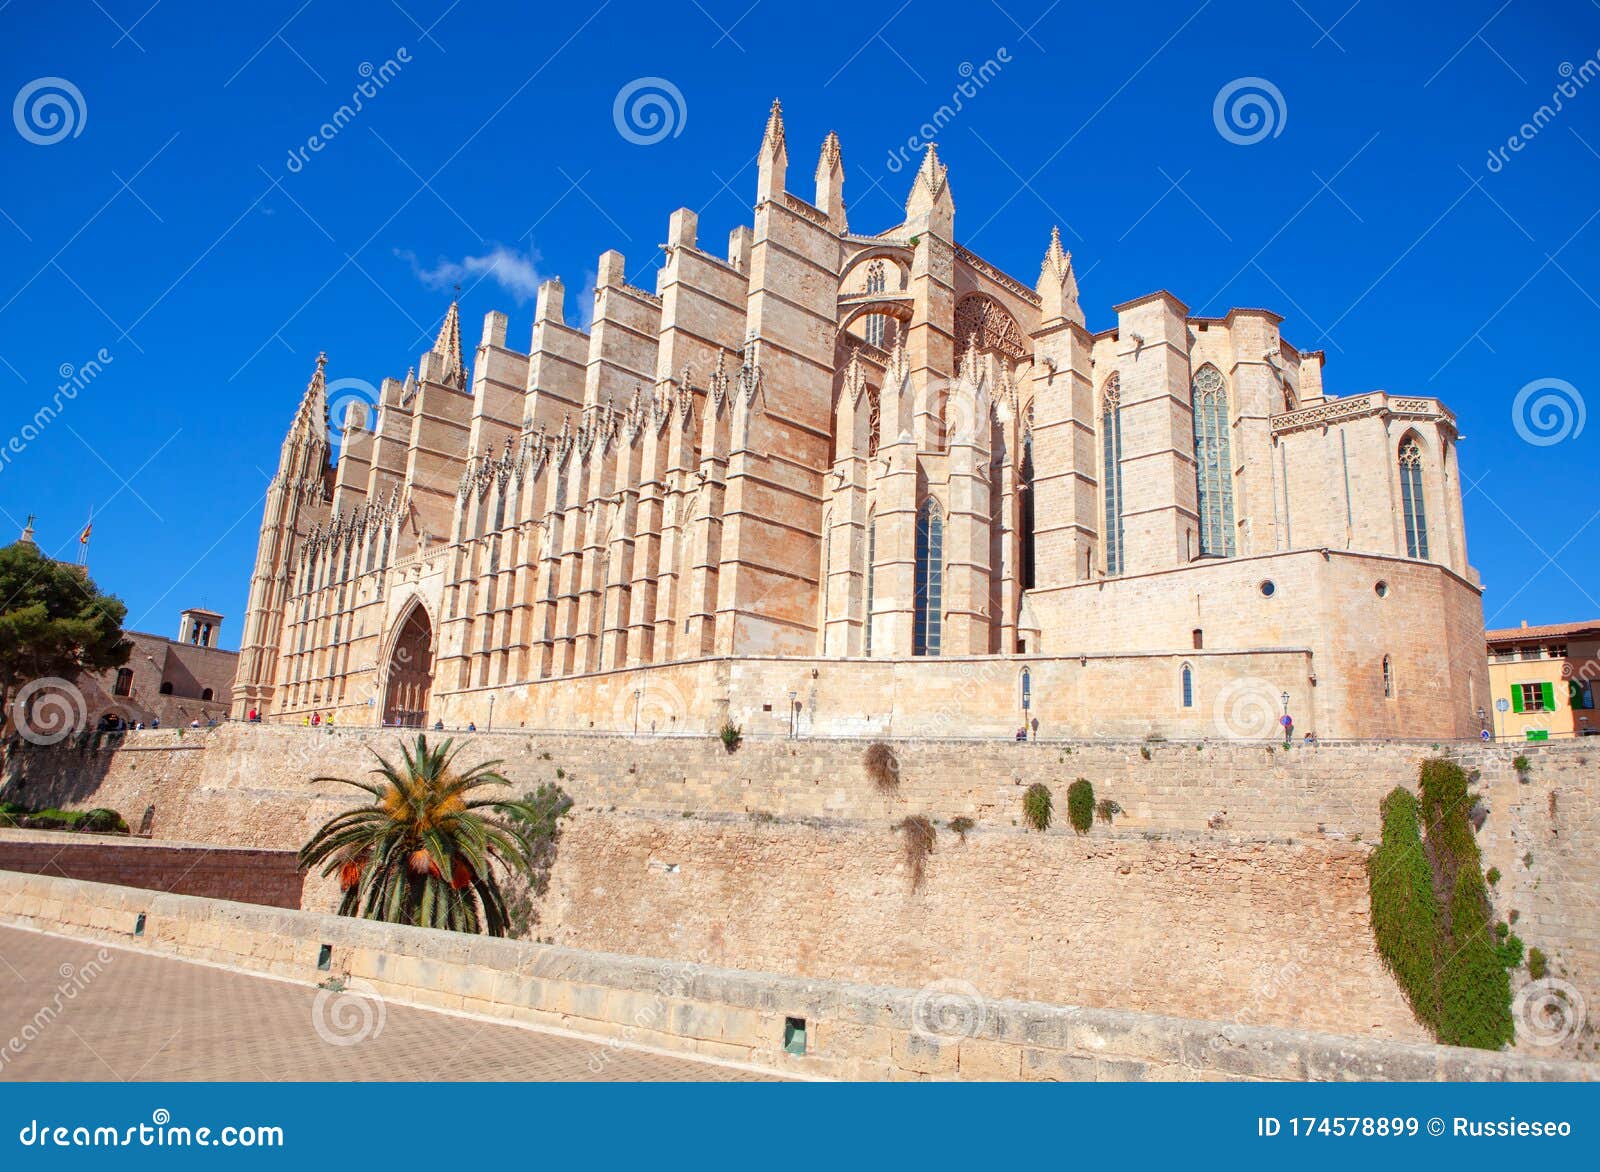 catedral de mallorca in daytime